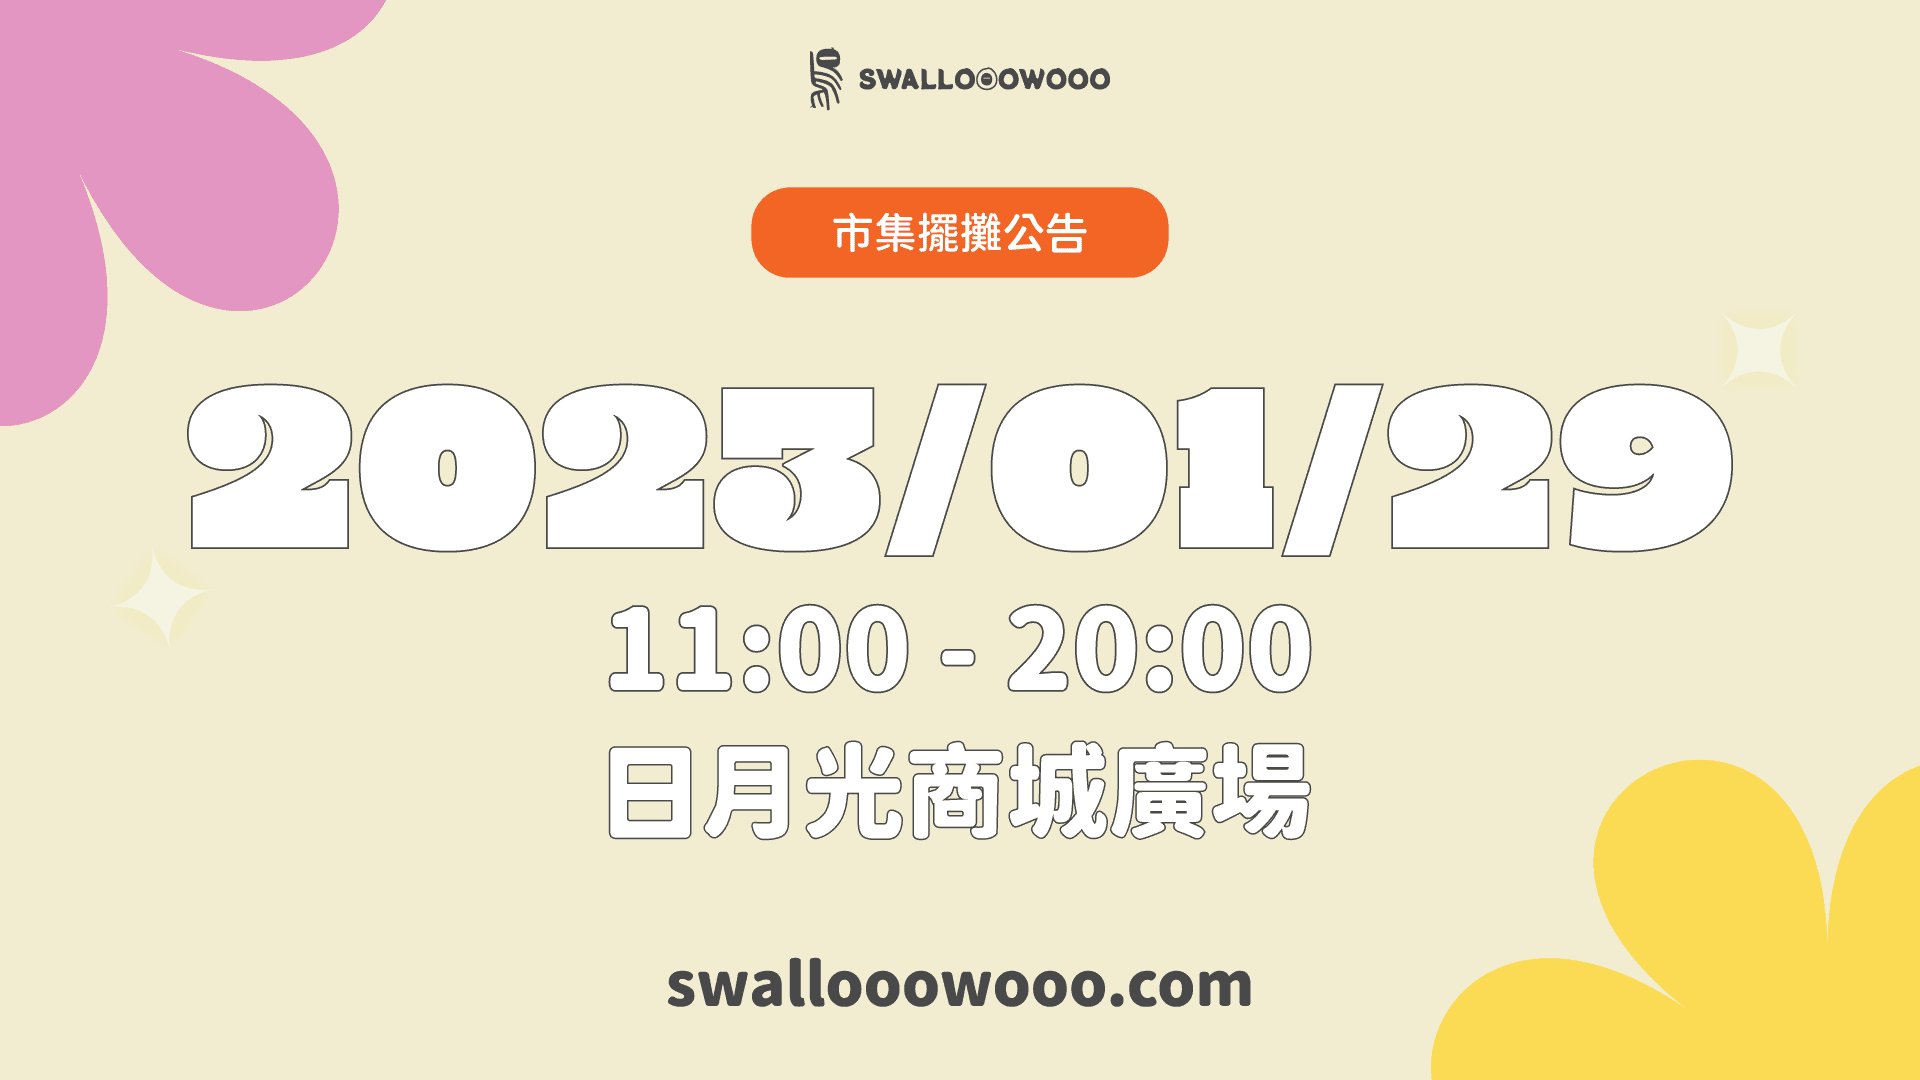 230127-市集擺攤-1920-1080-bazaar-swallooowooo